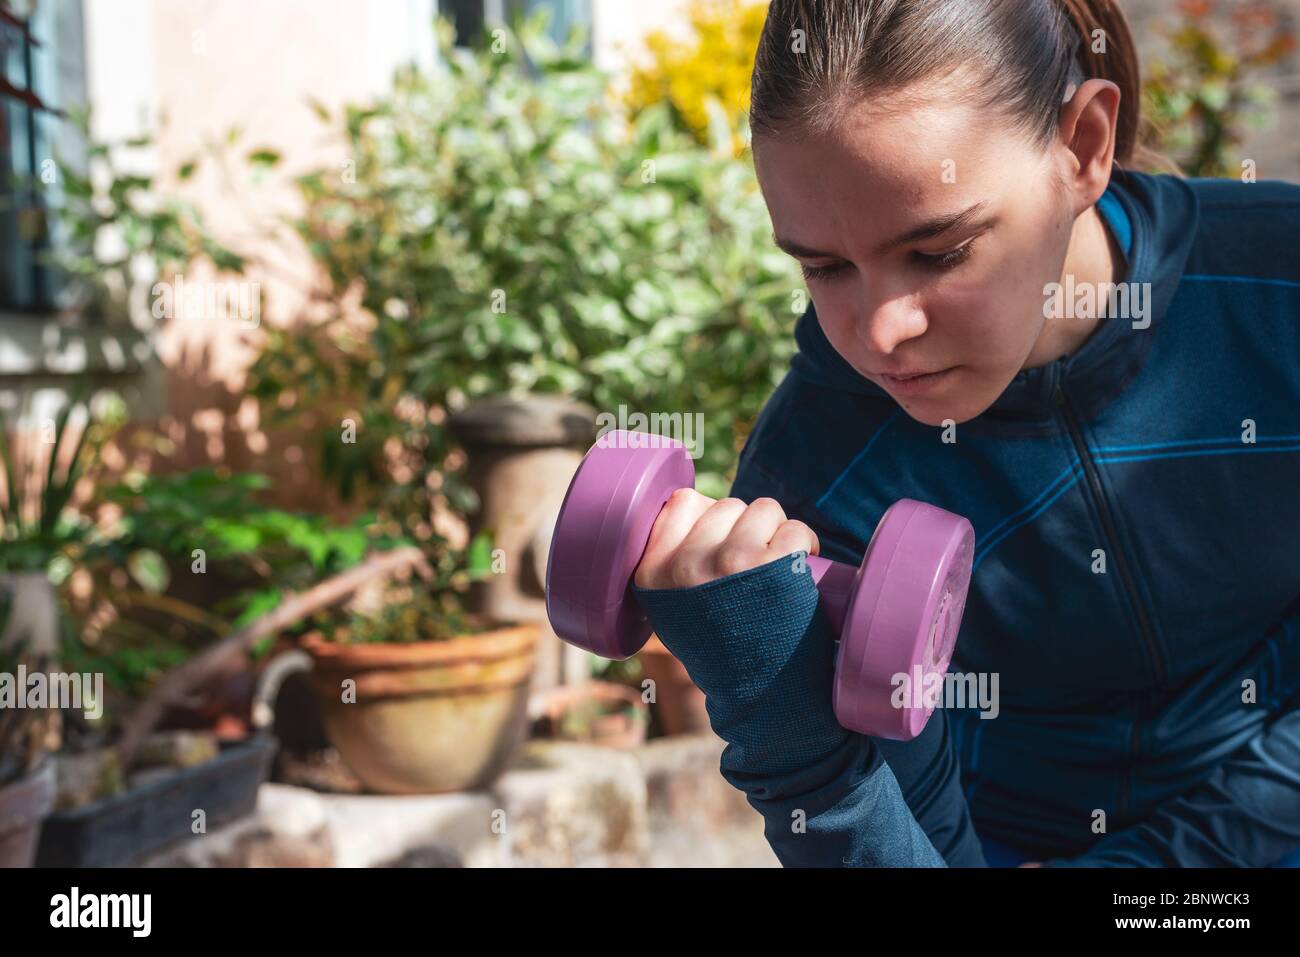 Attraktive junge Frau Athlet Arbeit im Garten mit Gewichten in Sportkleidung gekleidet...Vergangenheit Zeit hile beschränkt. Stockfoto